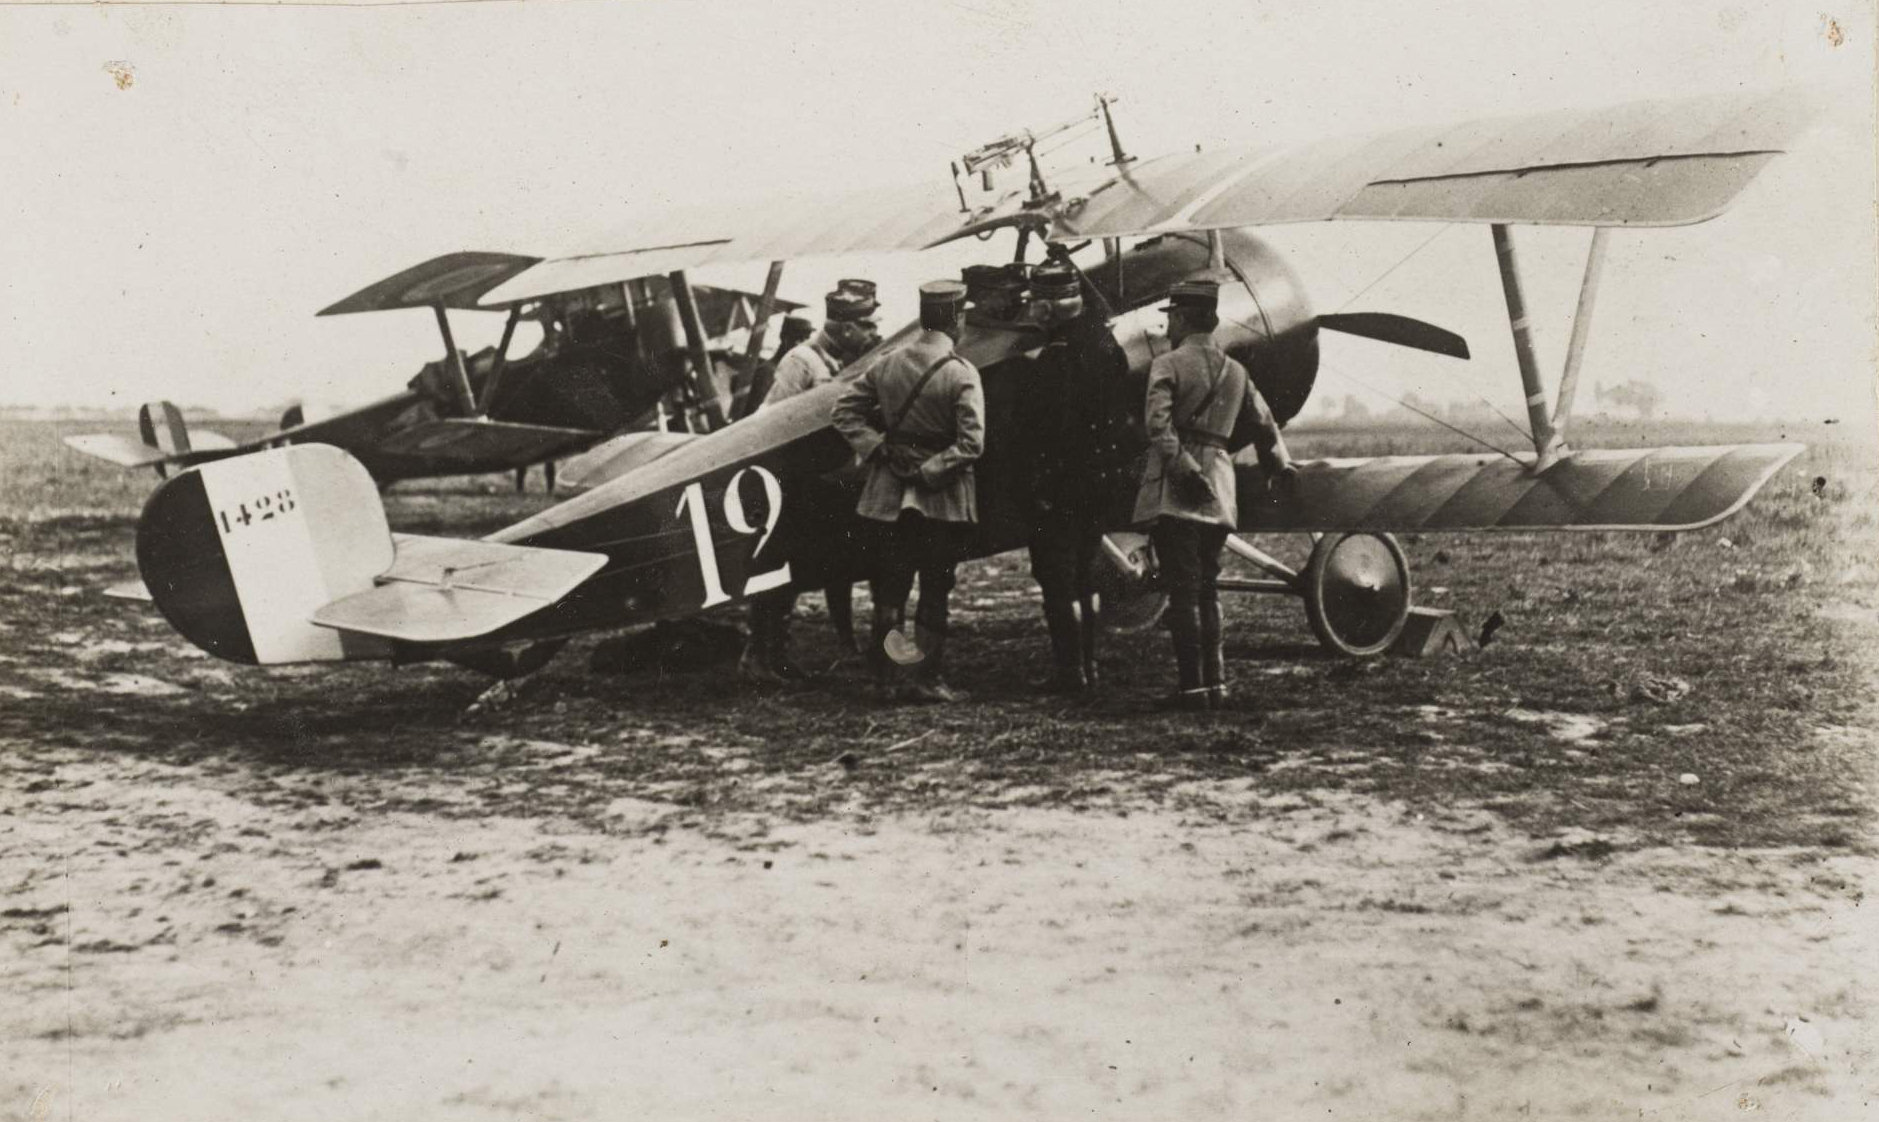 Французский главком генерал Жоффр поздравляет пилота Рене Дорме, сидящего в кабине истребителя Ньюпор 17, с воздушной победой во время битвы на Сомме